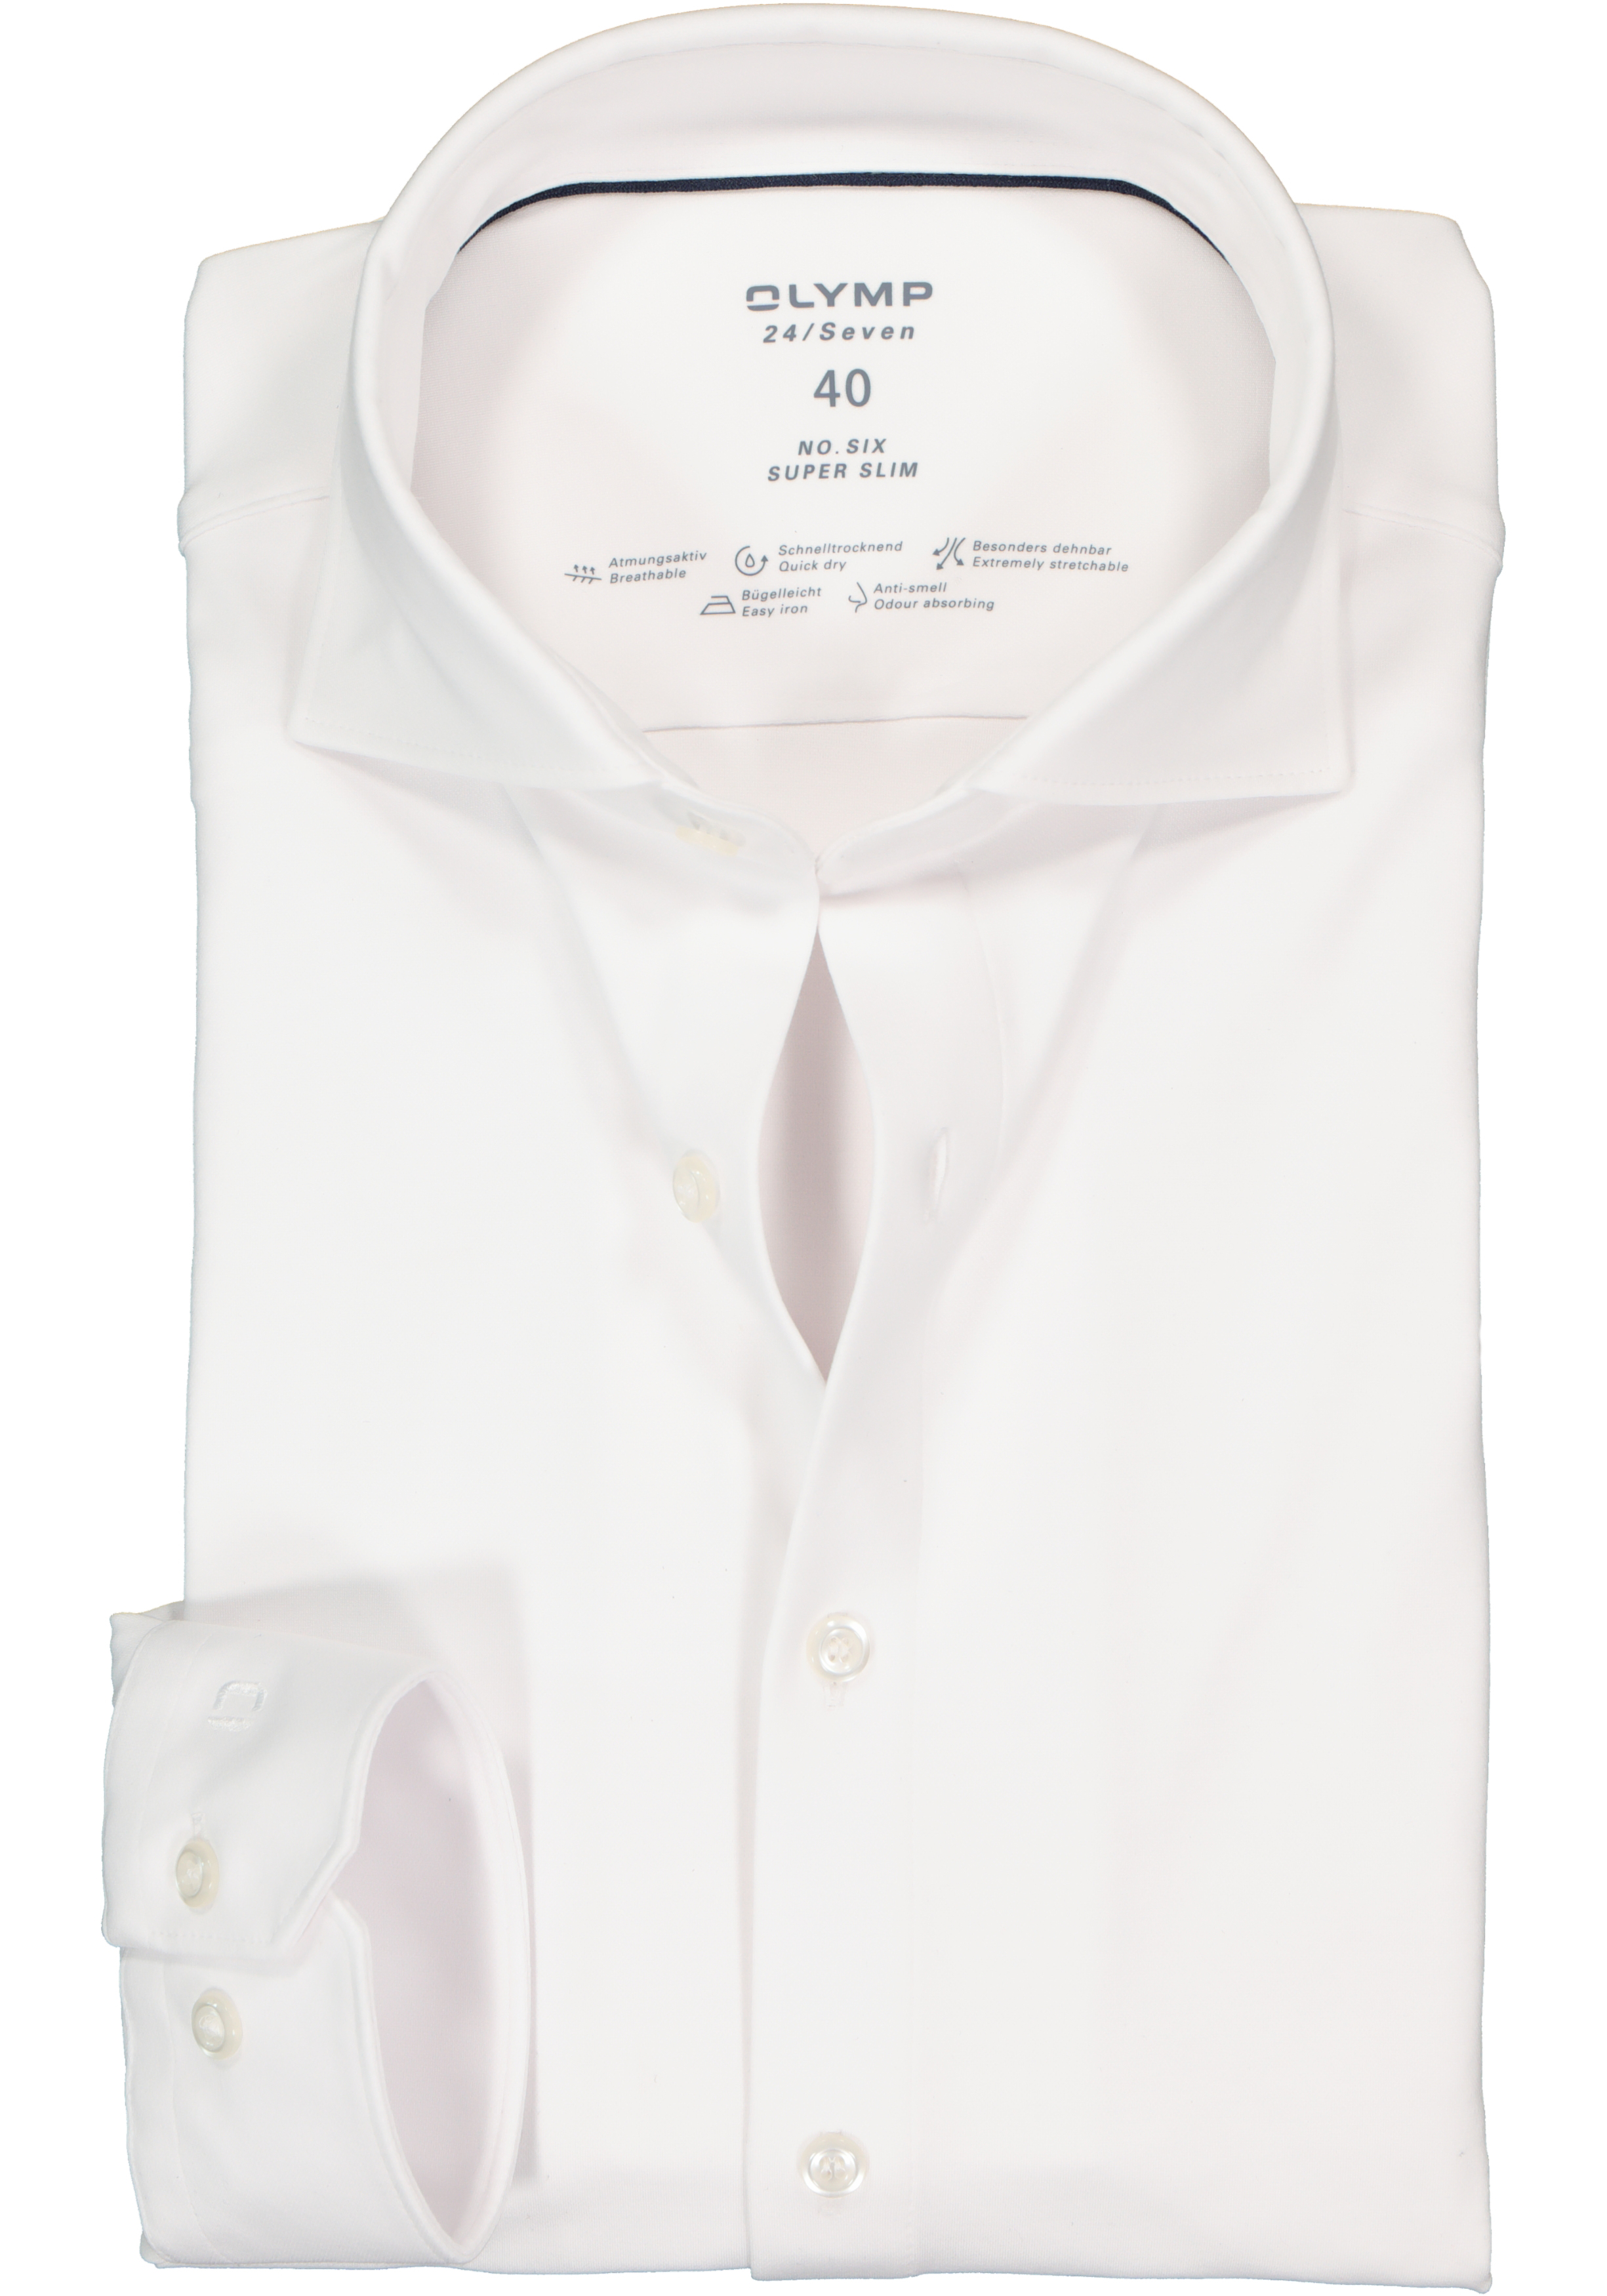 OLYMP No. 6 super slim fit overhemd 24/7, mouwlengte 7, wit pique